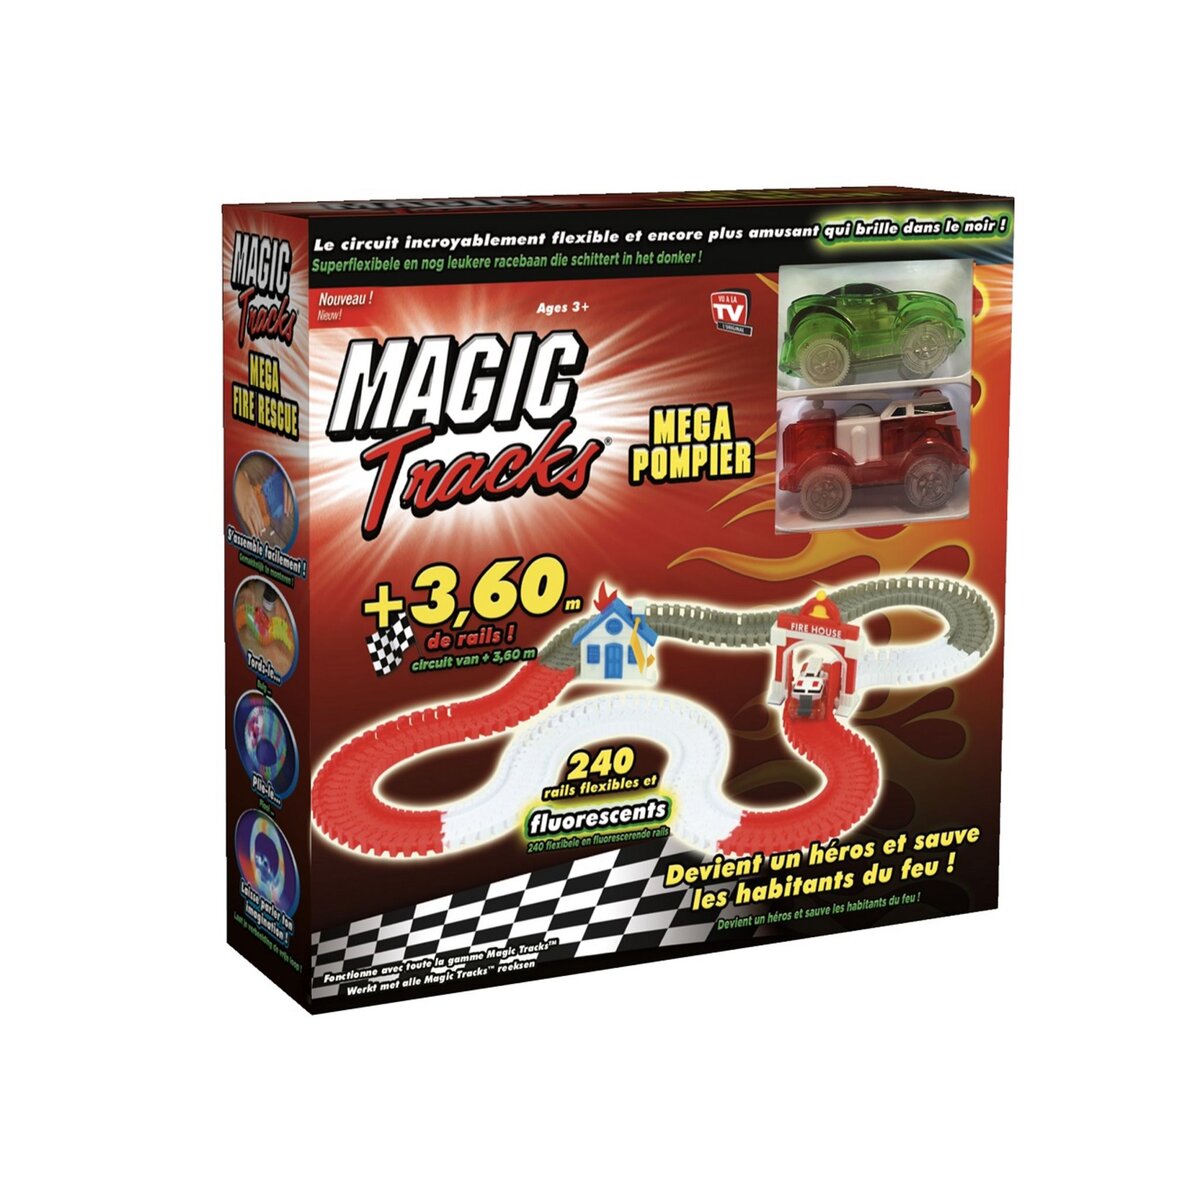 MAGIC TRACKS RC Magic tracks - Set "méga pompiers" avec 2 voitures, 200 rails fluorescents, une planche d'autocollants et un guide de montage 